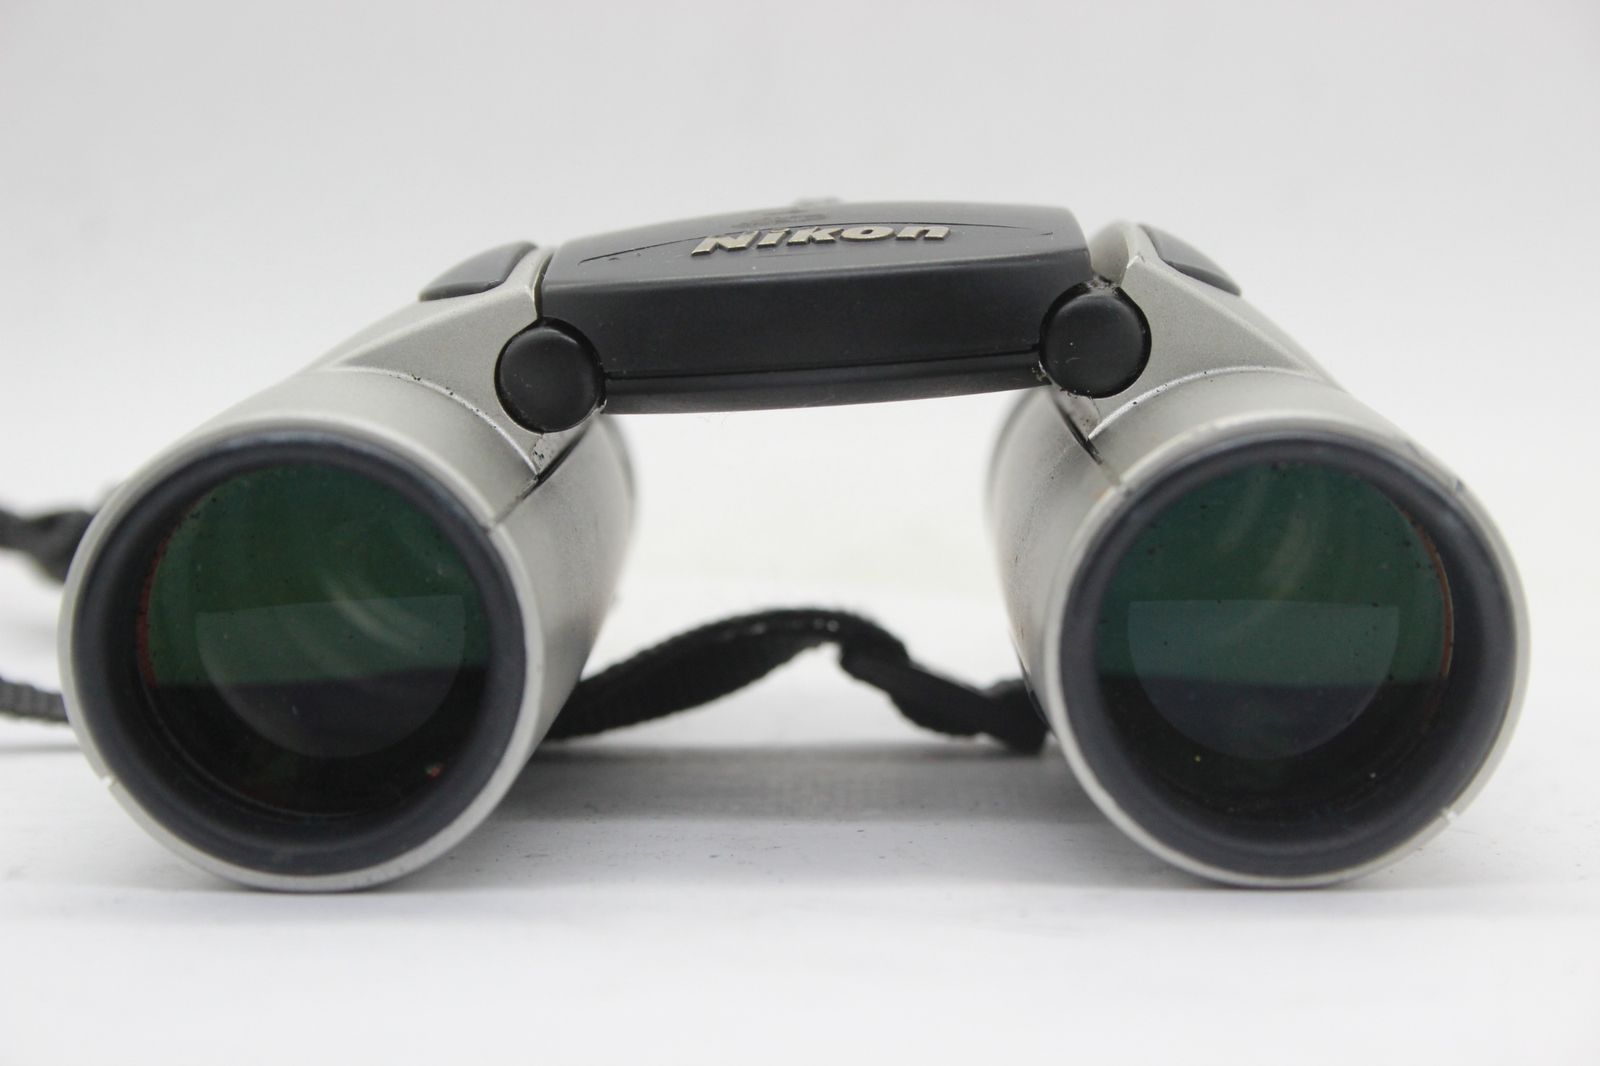 【返品保証】 ニコン Nikon スポーツスター Sportstar III 10x25 6.5° WF 双眼鏡 s8575